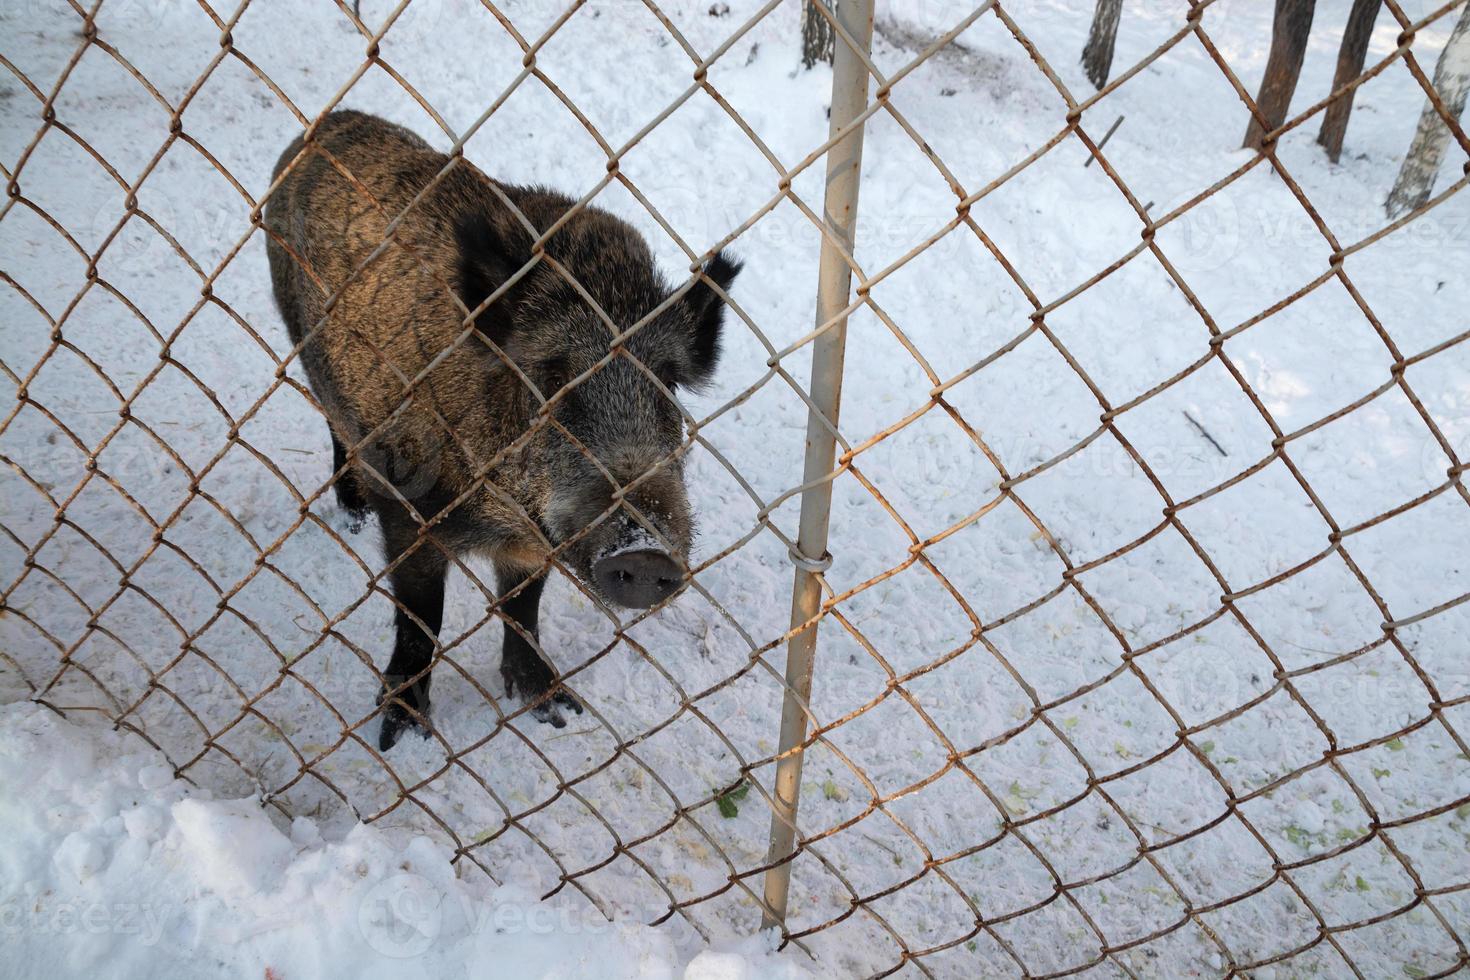 vildsvin på jakt efter mat på en vintergård. foto